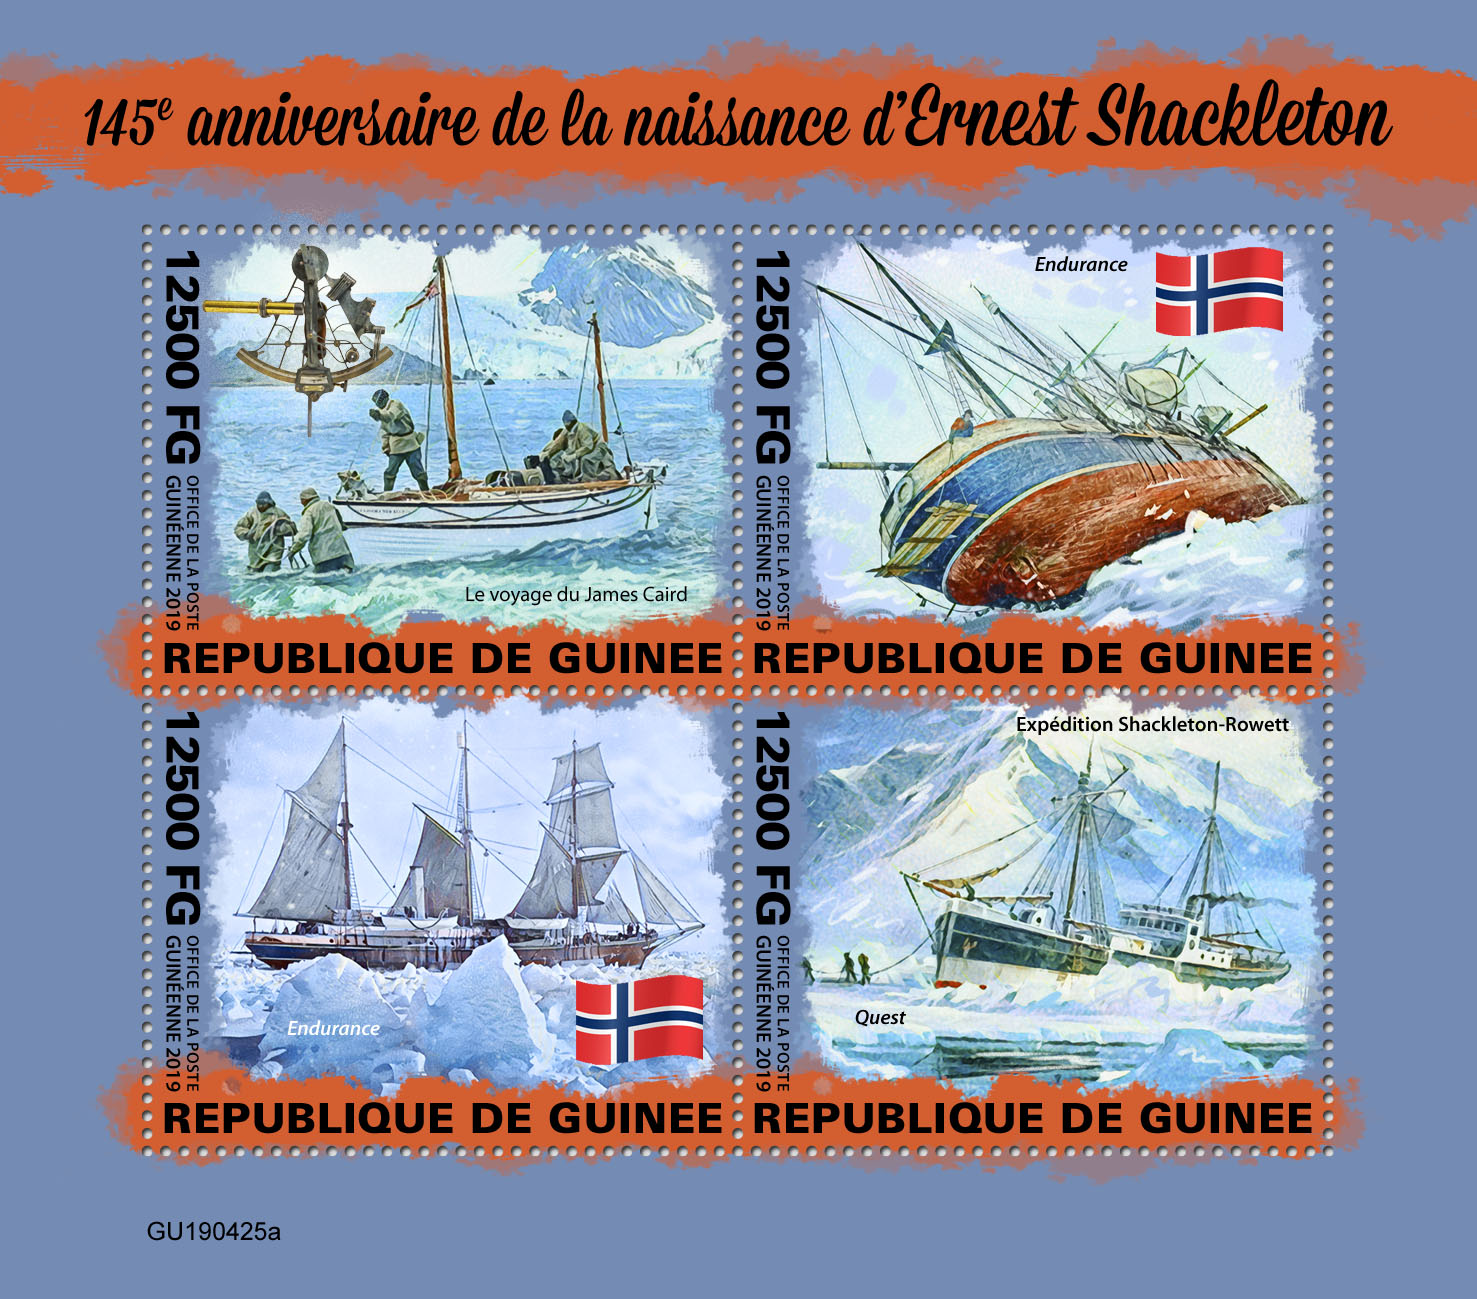 Ernest Shackleton - Issue of Guinée postage stamps